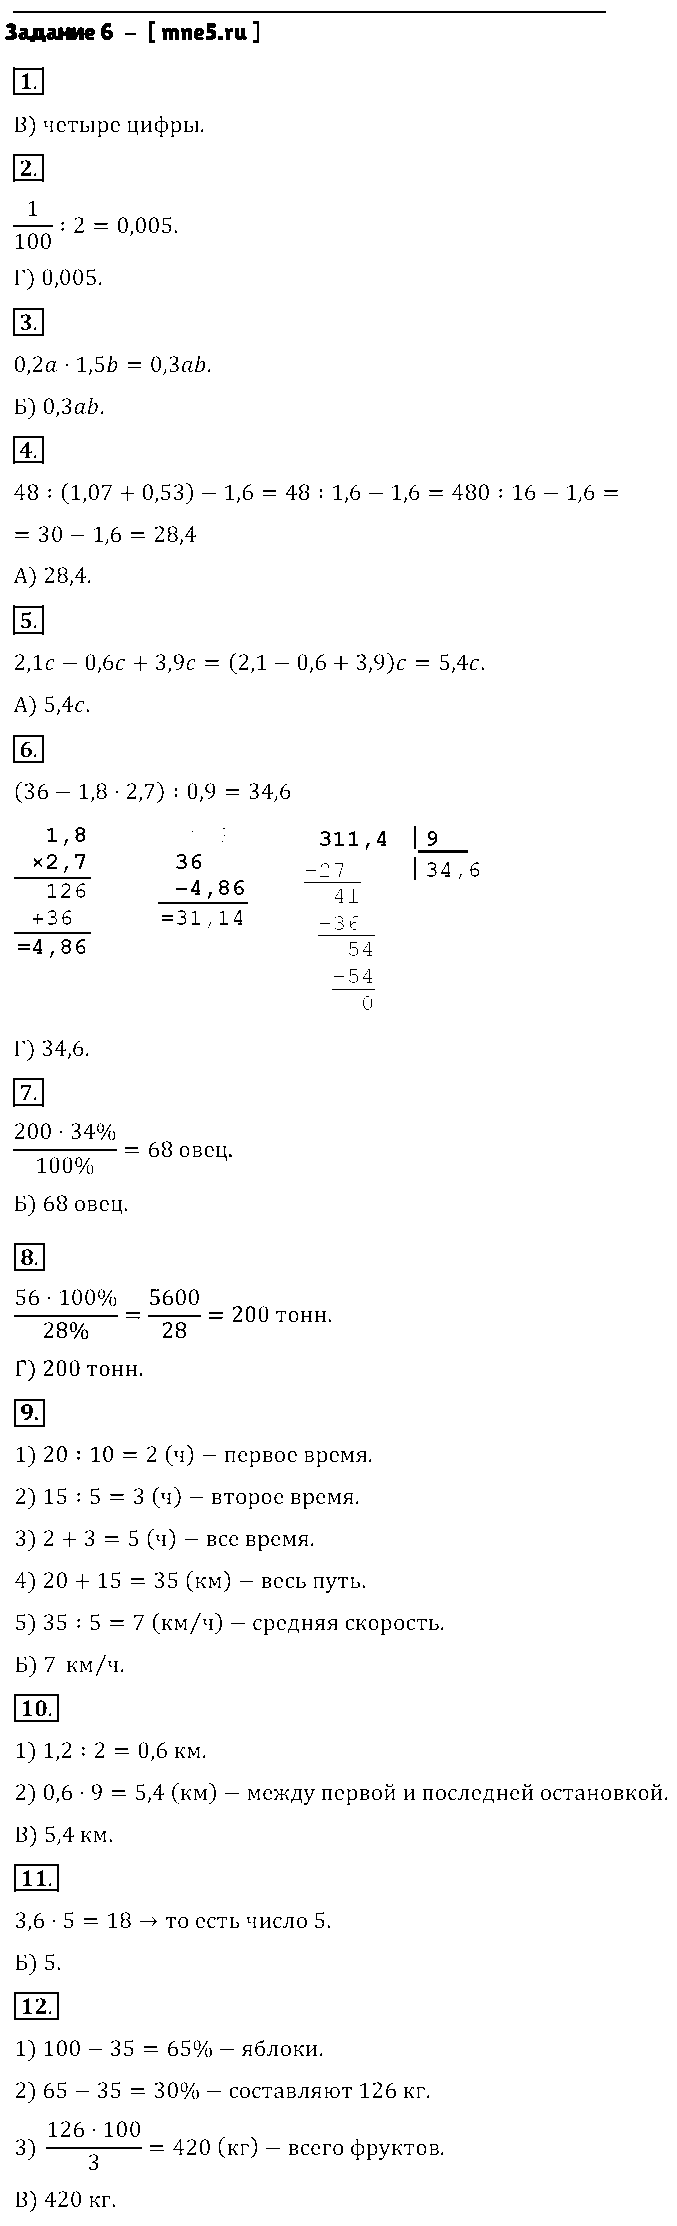 ГДЗ Математика 5 класс - Задание 6